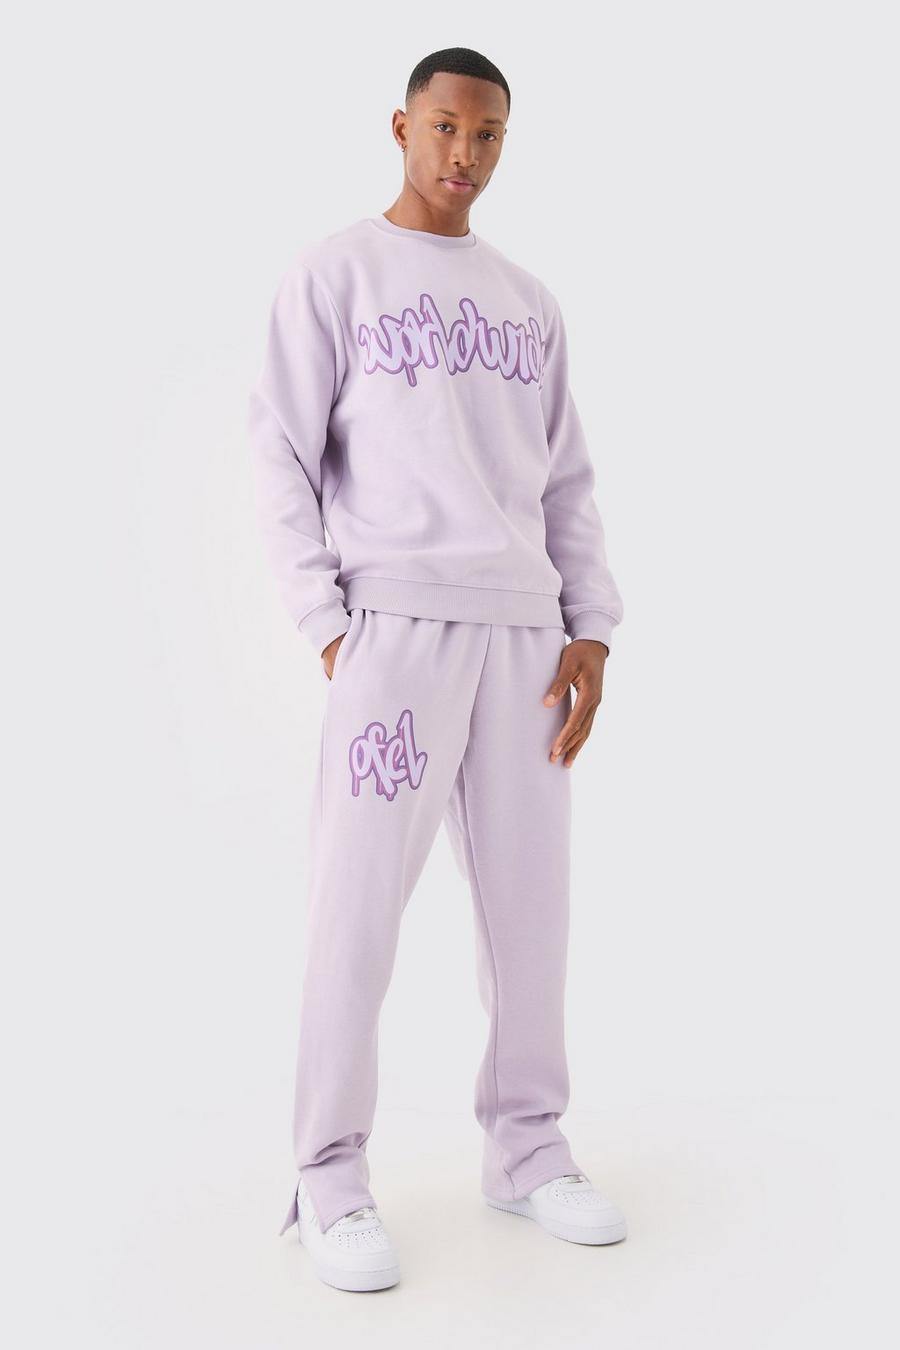 Lilac Warhol Tigerskins Shirt 8172 WARHOL WOODLAND